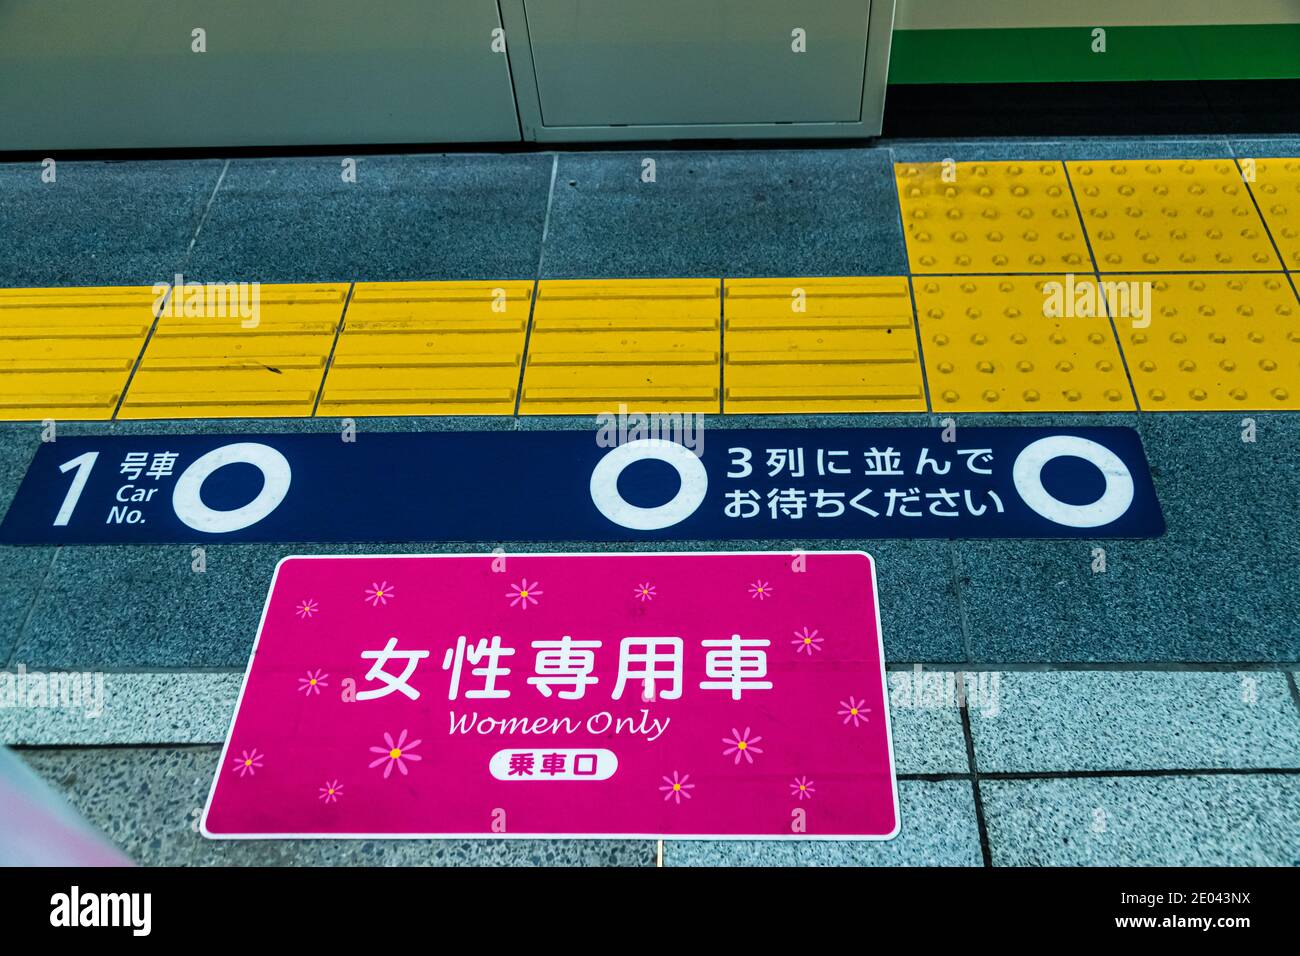 Plattformtipps für Trainer in der Tokio U-Bahn, Japan. Auf dem Bahnsteig befinden sich Zugabteile, die nur für Frauen bestimmt sind. Markierungen in der Farbe Pink auf der Plattform zeigen dies an Stockfoto